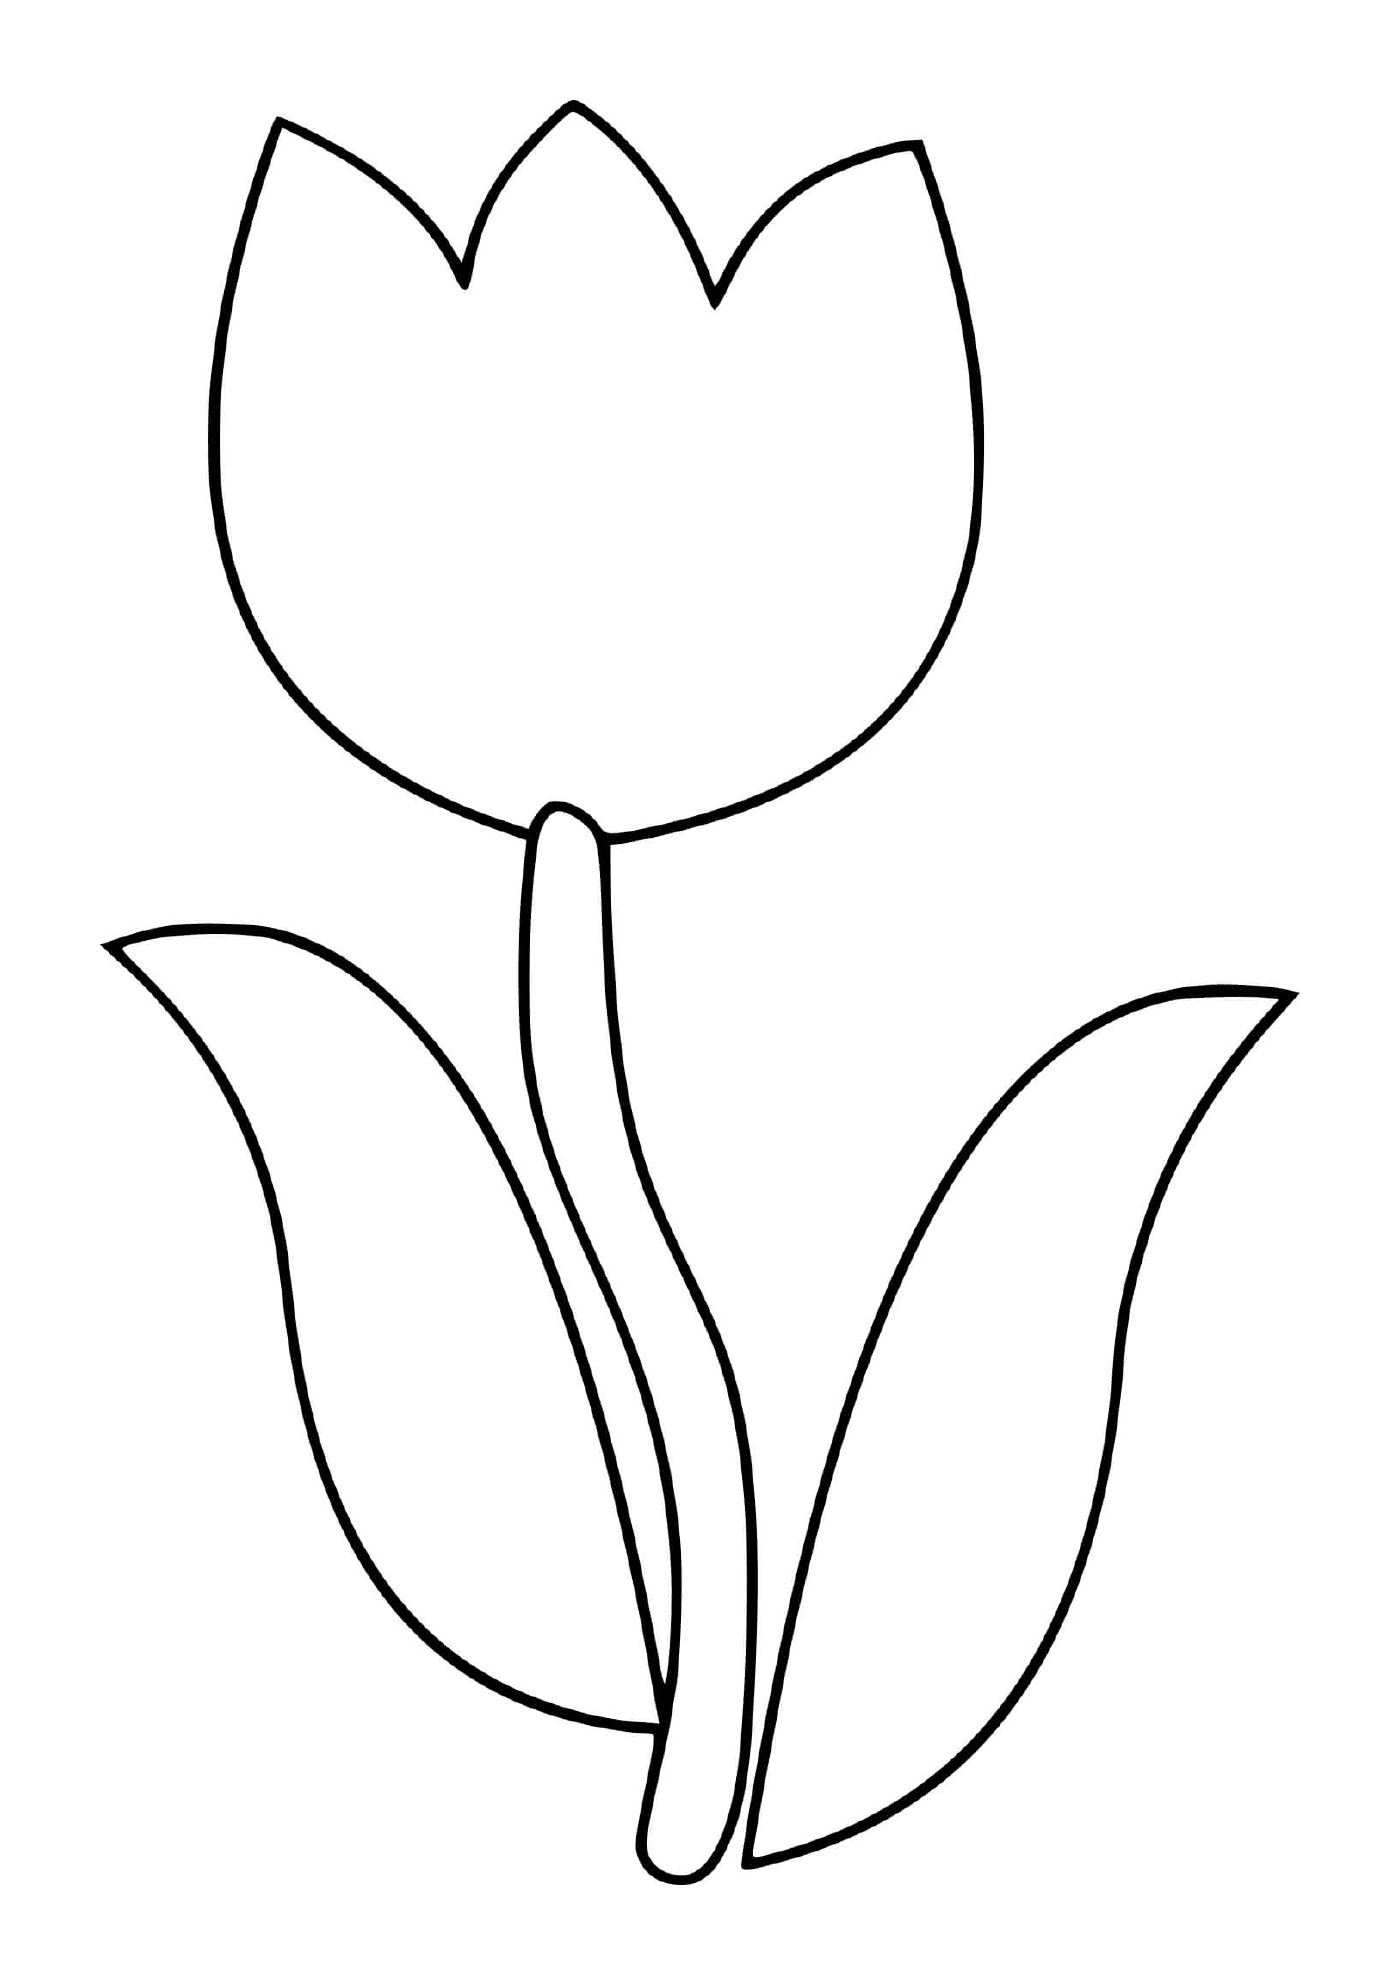  Простой цветок тюльпана 